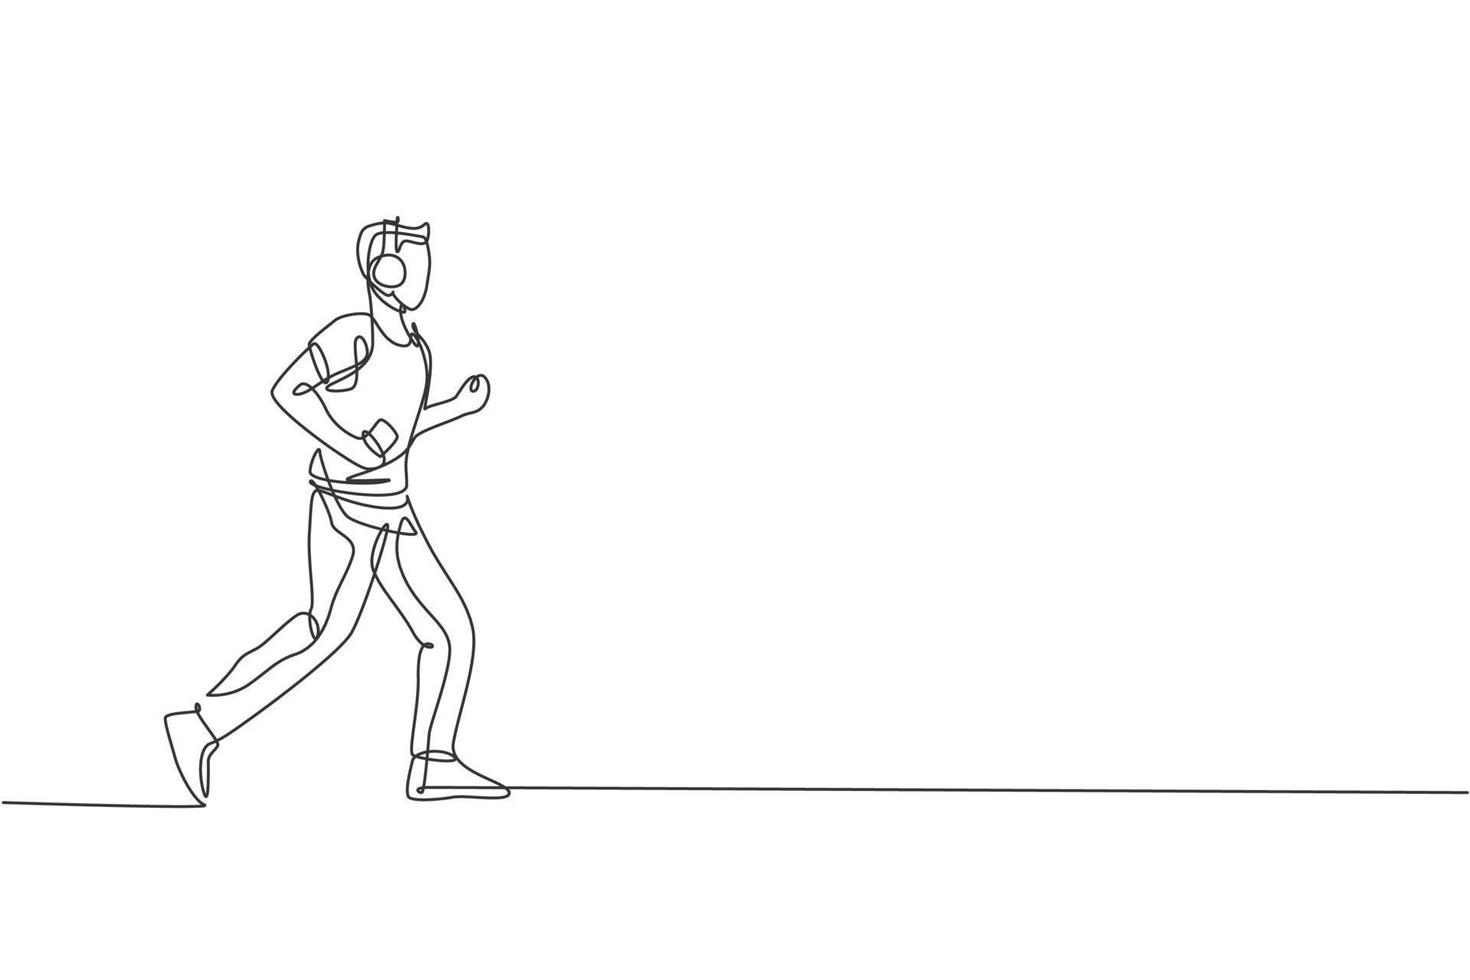 enda kontinuerlig linjeteckning ung smidig man löpare springa lugnt och koppla av lyssna på musik. hälsosam sport action koncept. trendiga en rad rita design vektor illustration grafik för att köra kampanj